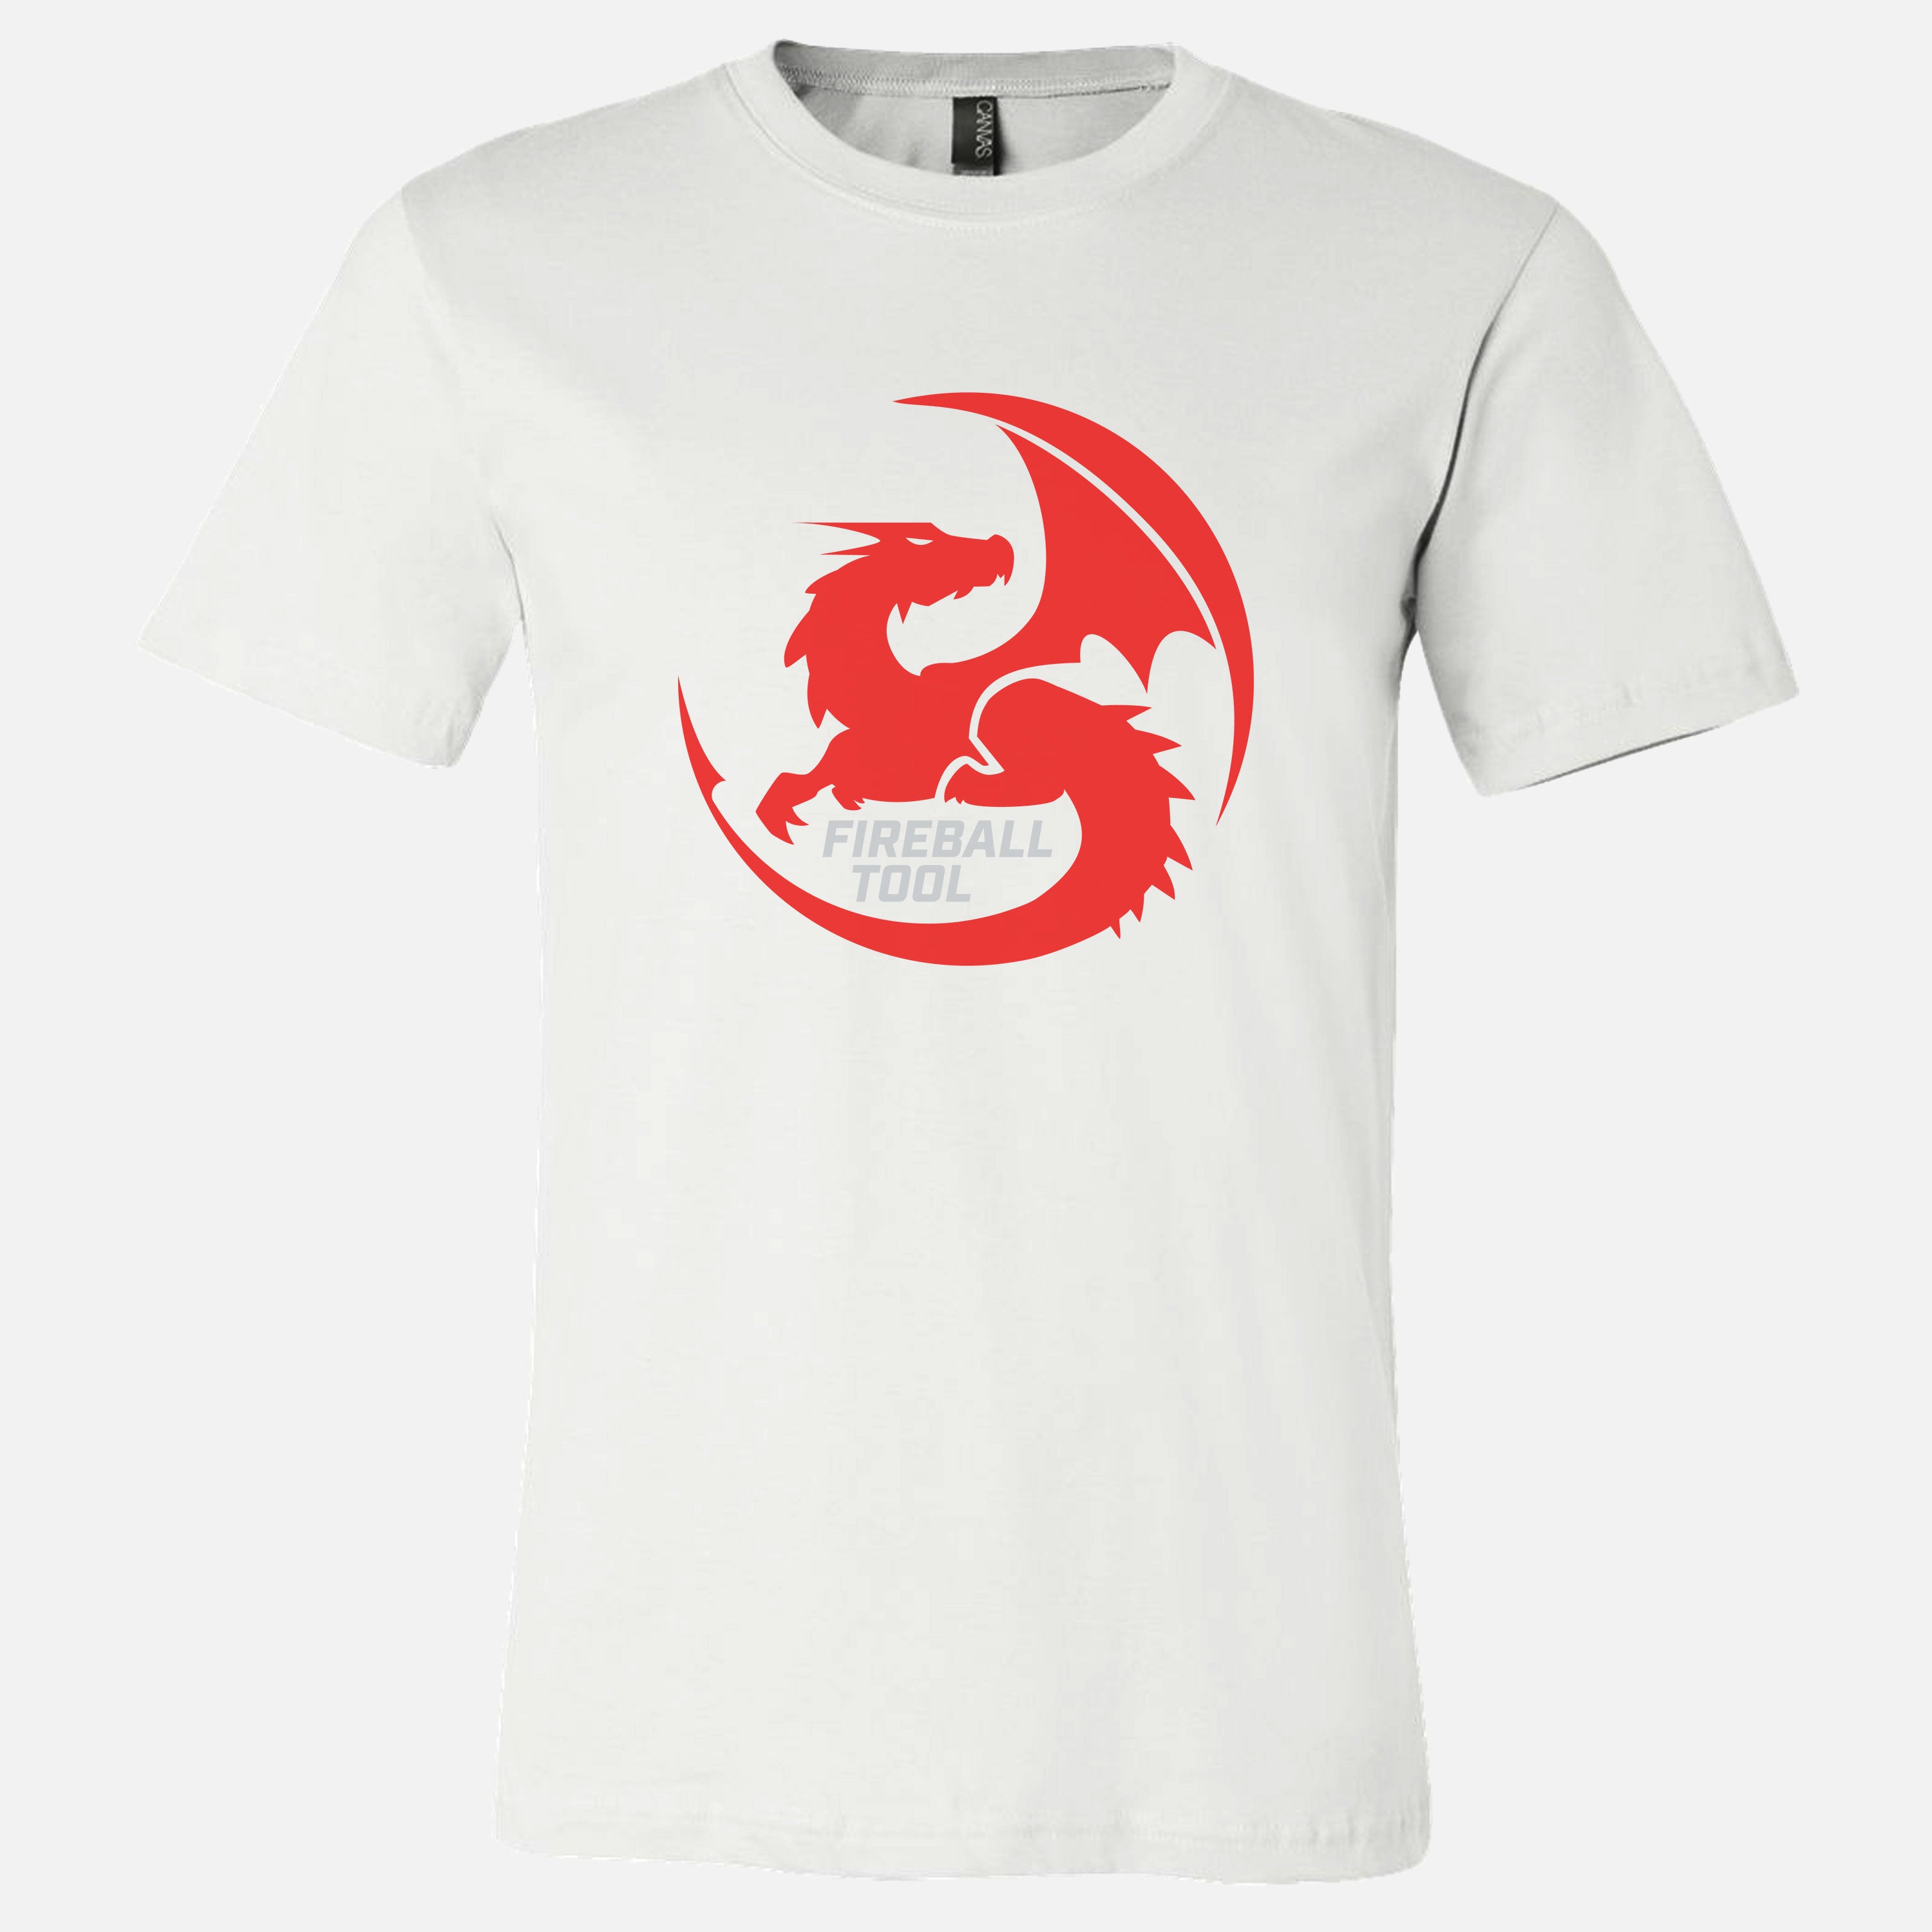 Fireball T-Shirt, Favicon Style (Design 6)